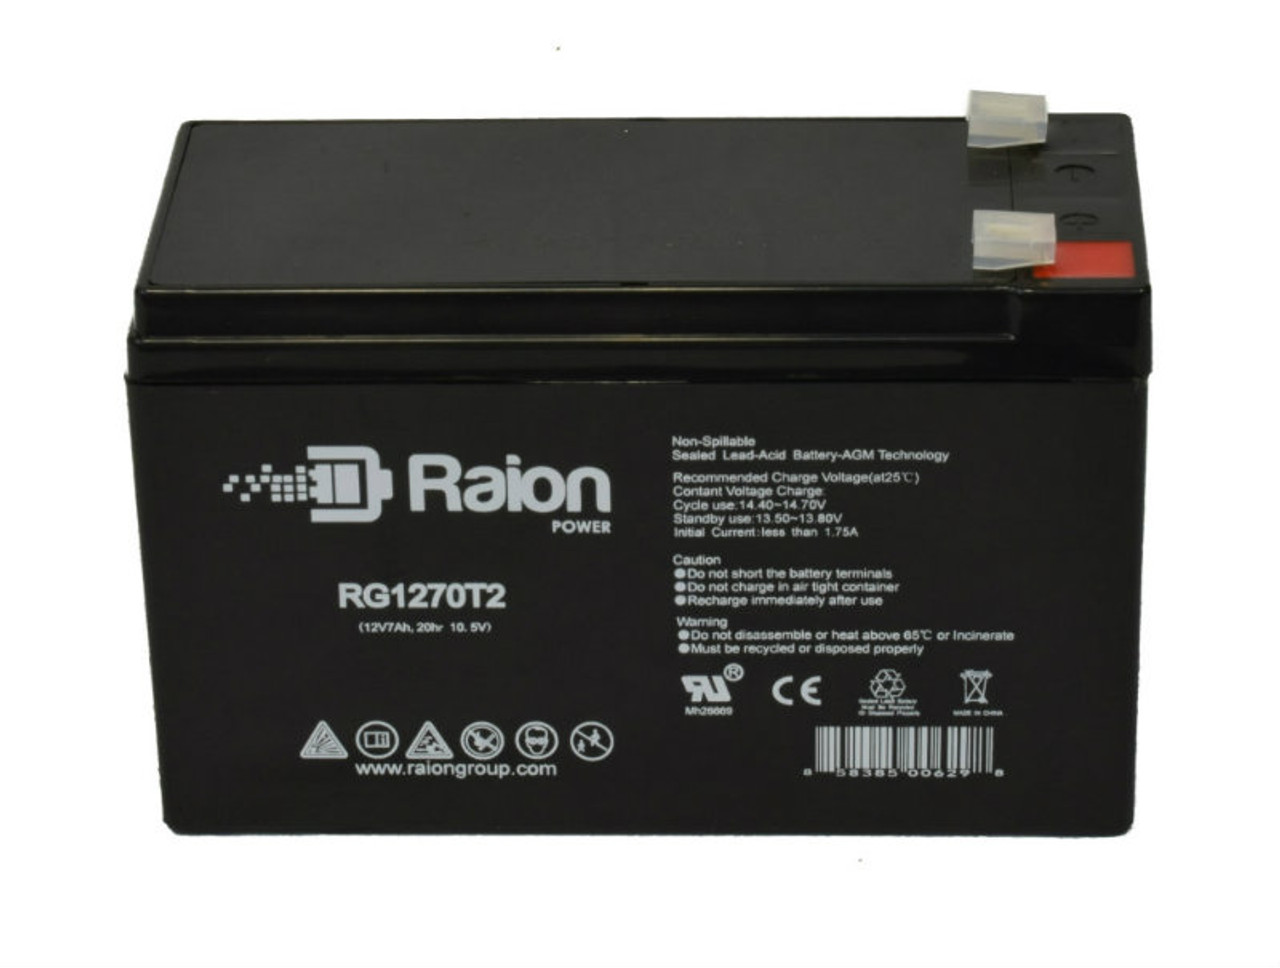 Raion Power RG1270T1 12V 7Ah Lead Acid Battery for Cybex 620A Arc Trainer